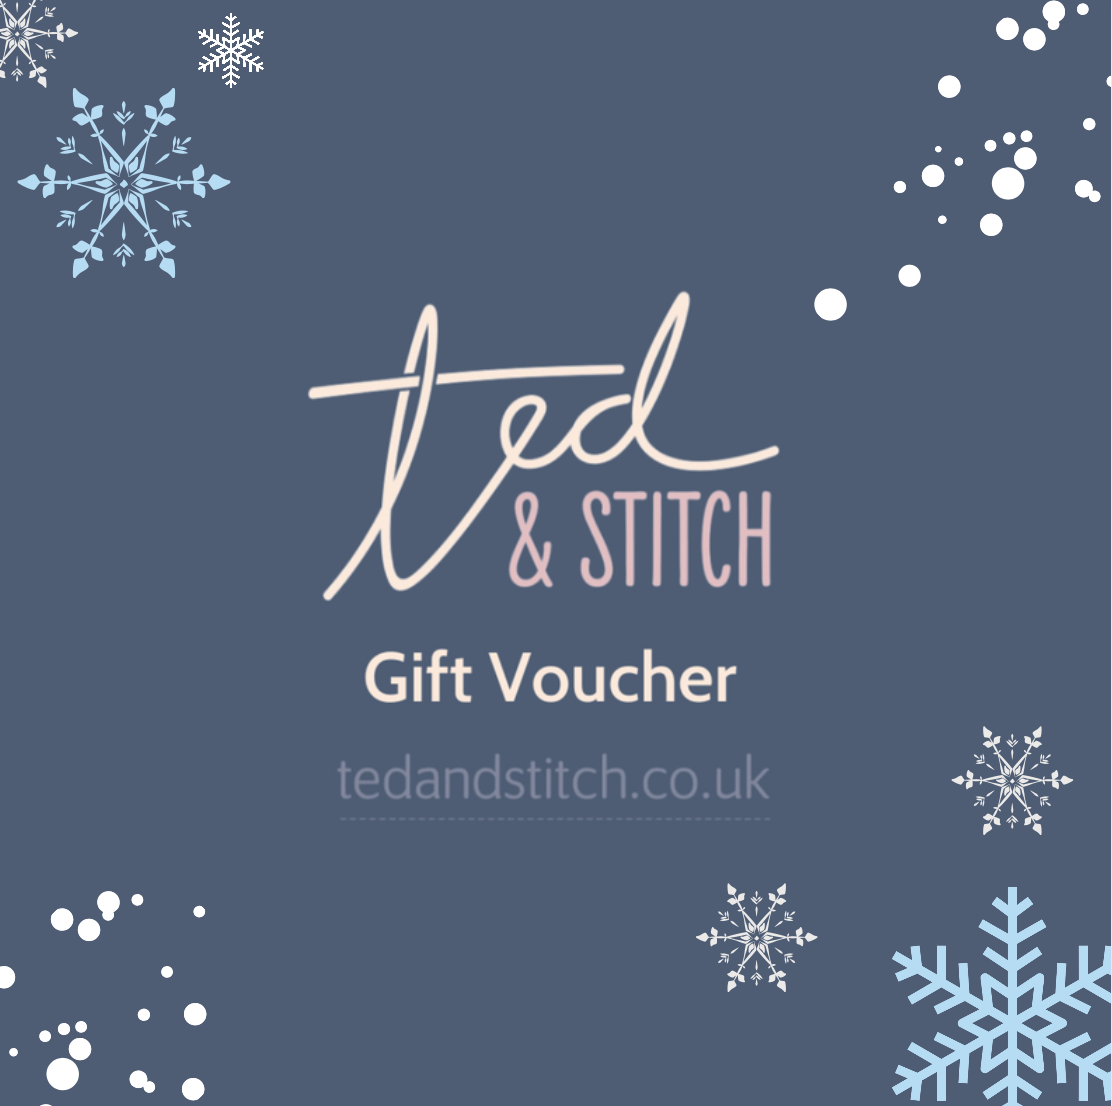 Gift Voucher | Ted & Stitch